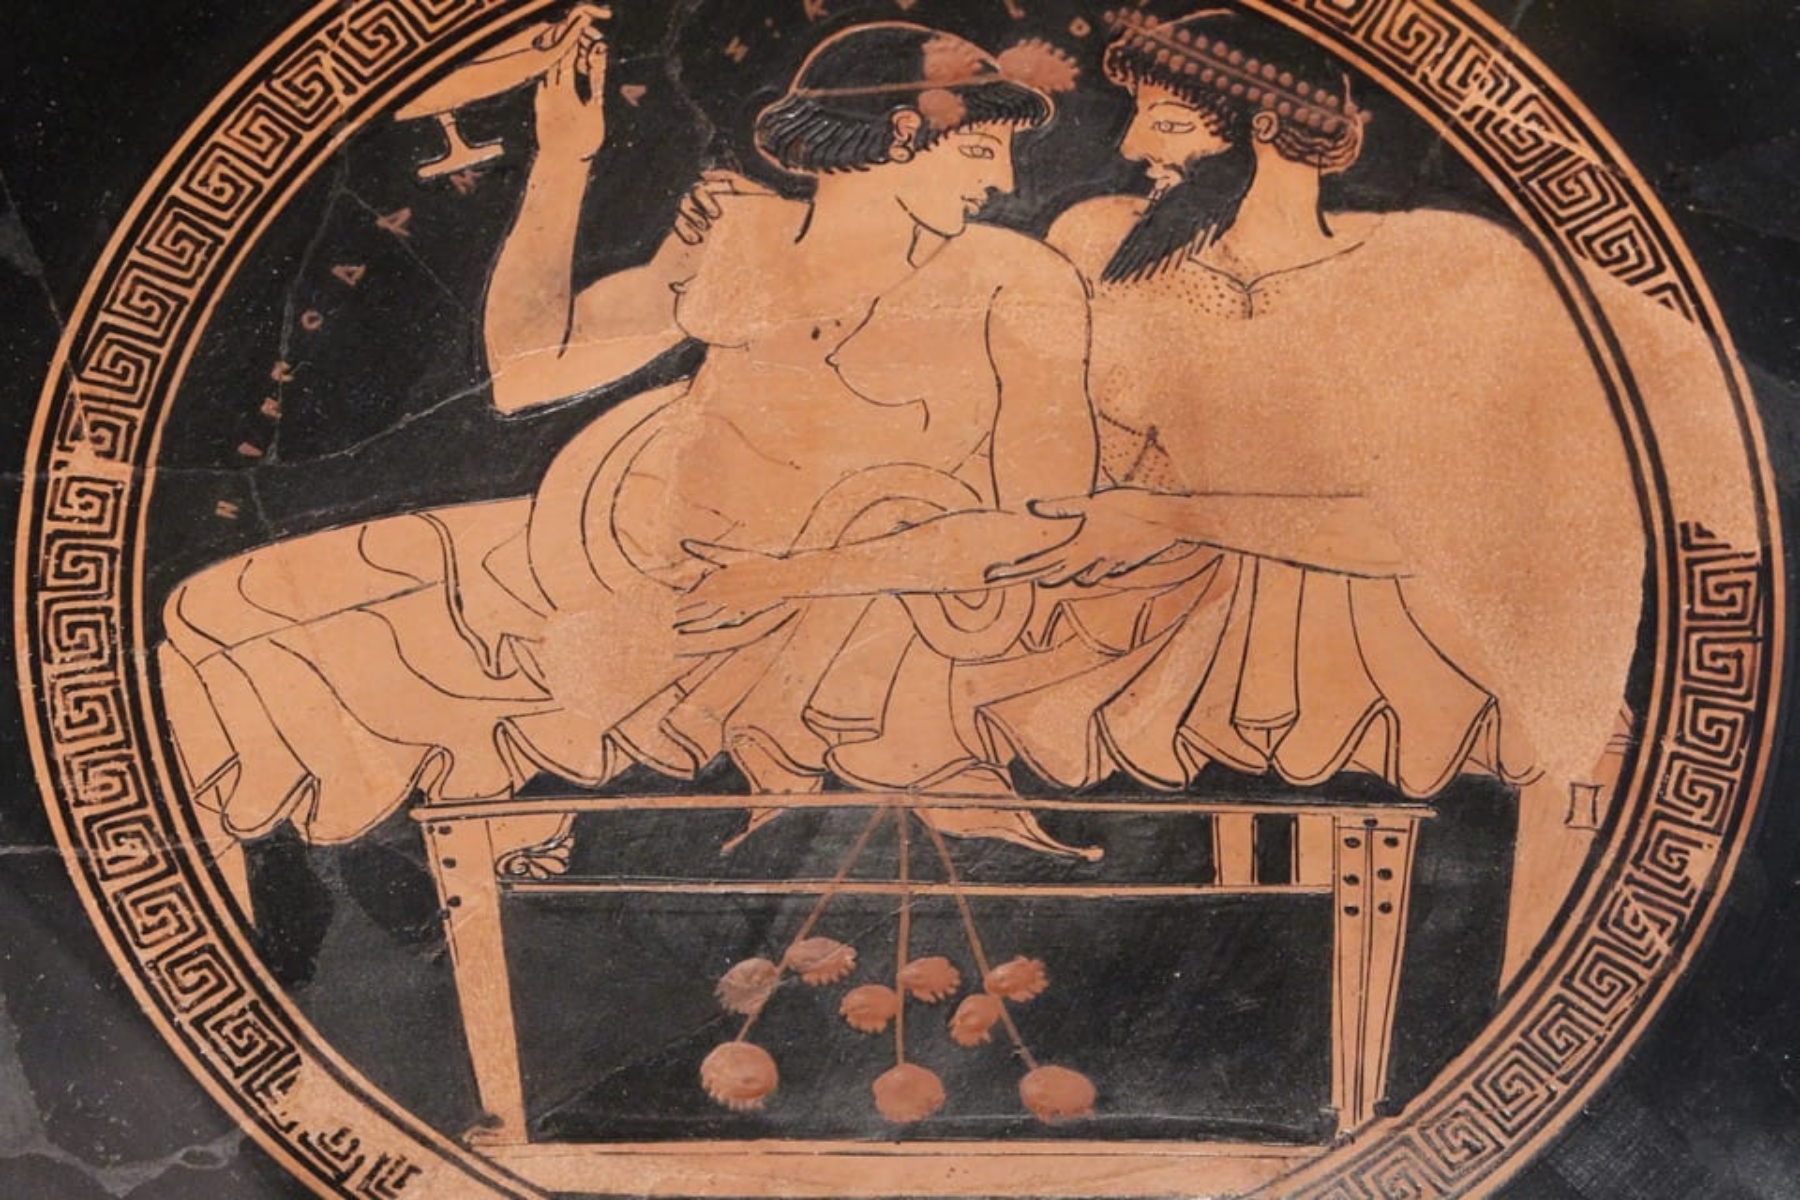 Σεξ και αρχαιότητα: Υπήρχαν σεξουαλικά ταμπού στην αρχαιότητα; Τι λέει η ιστορία;